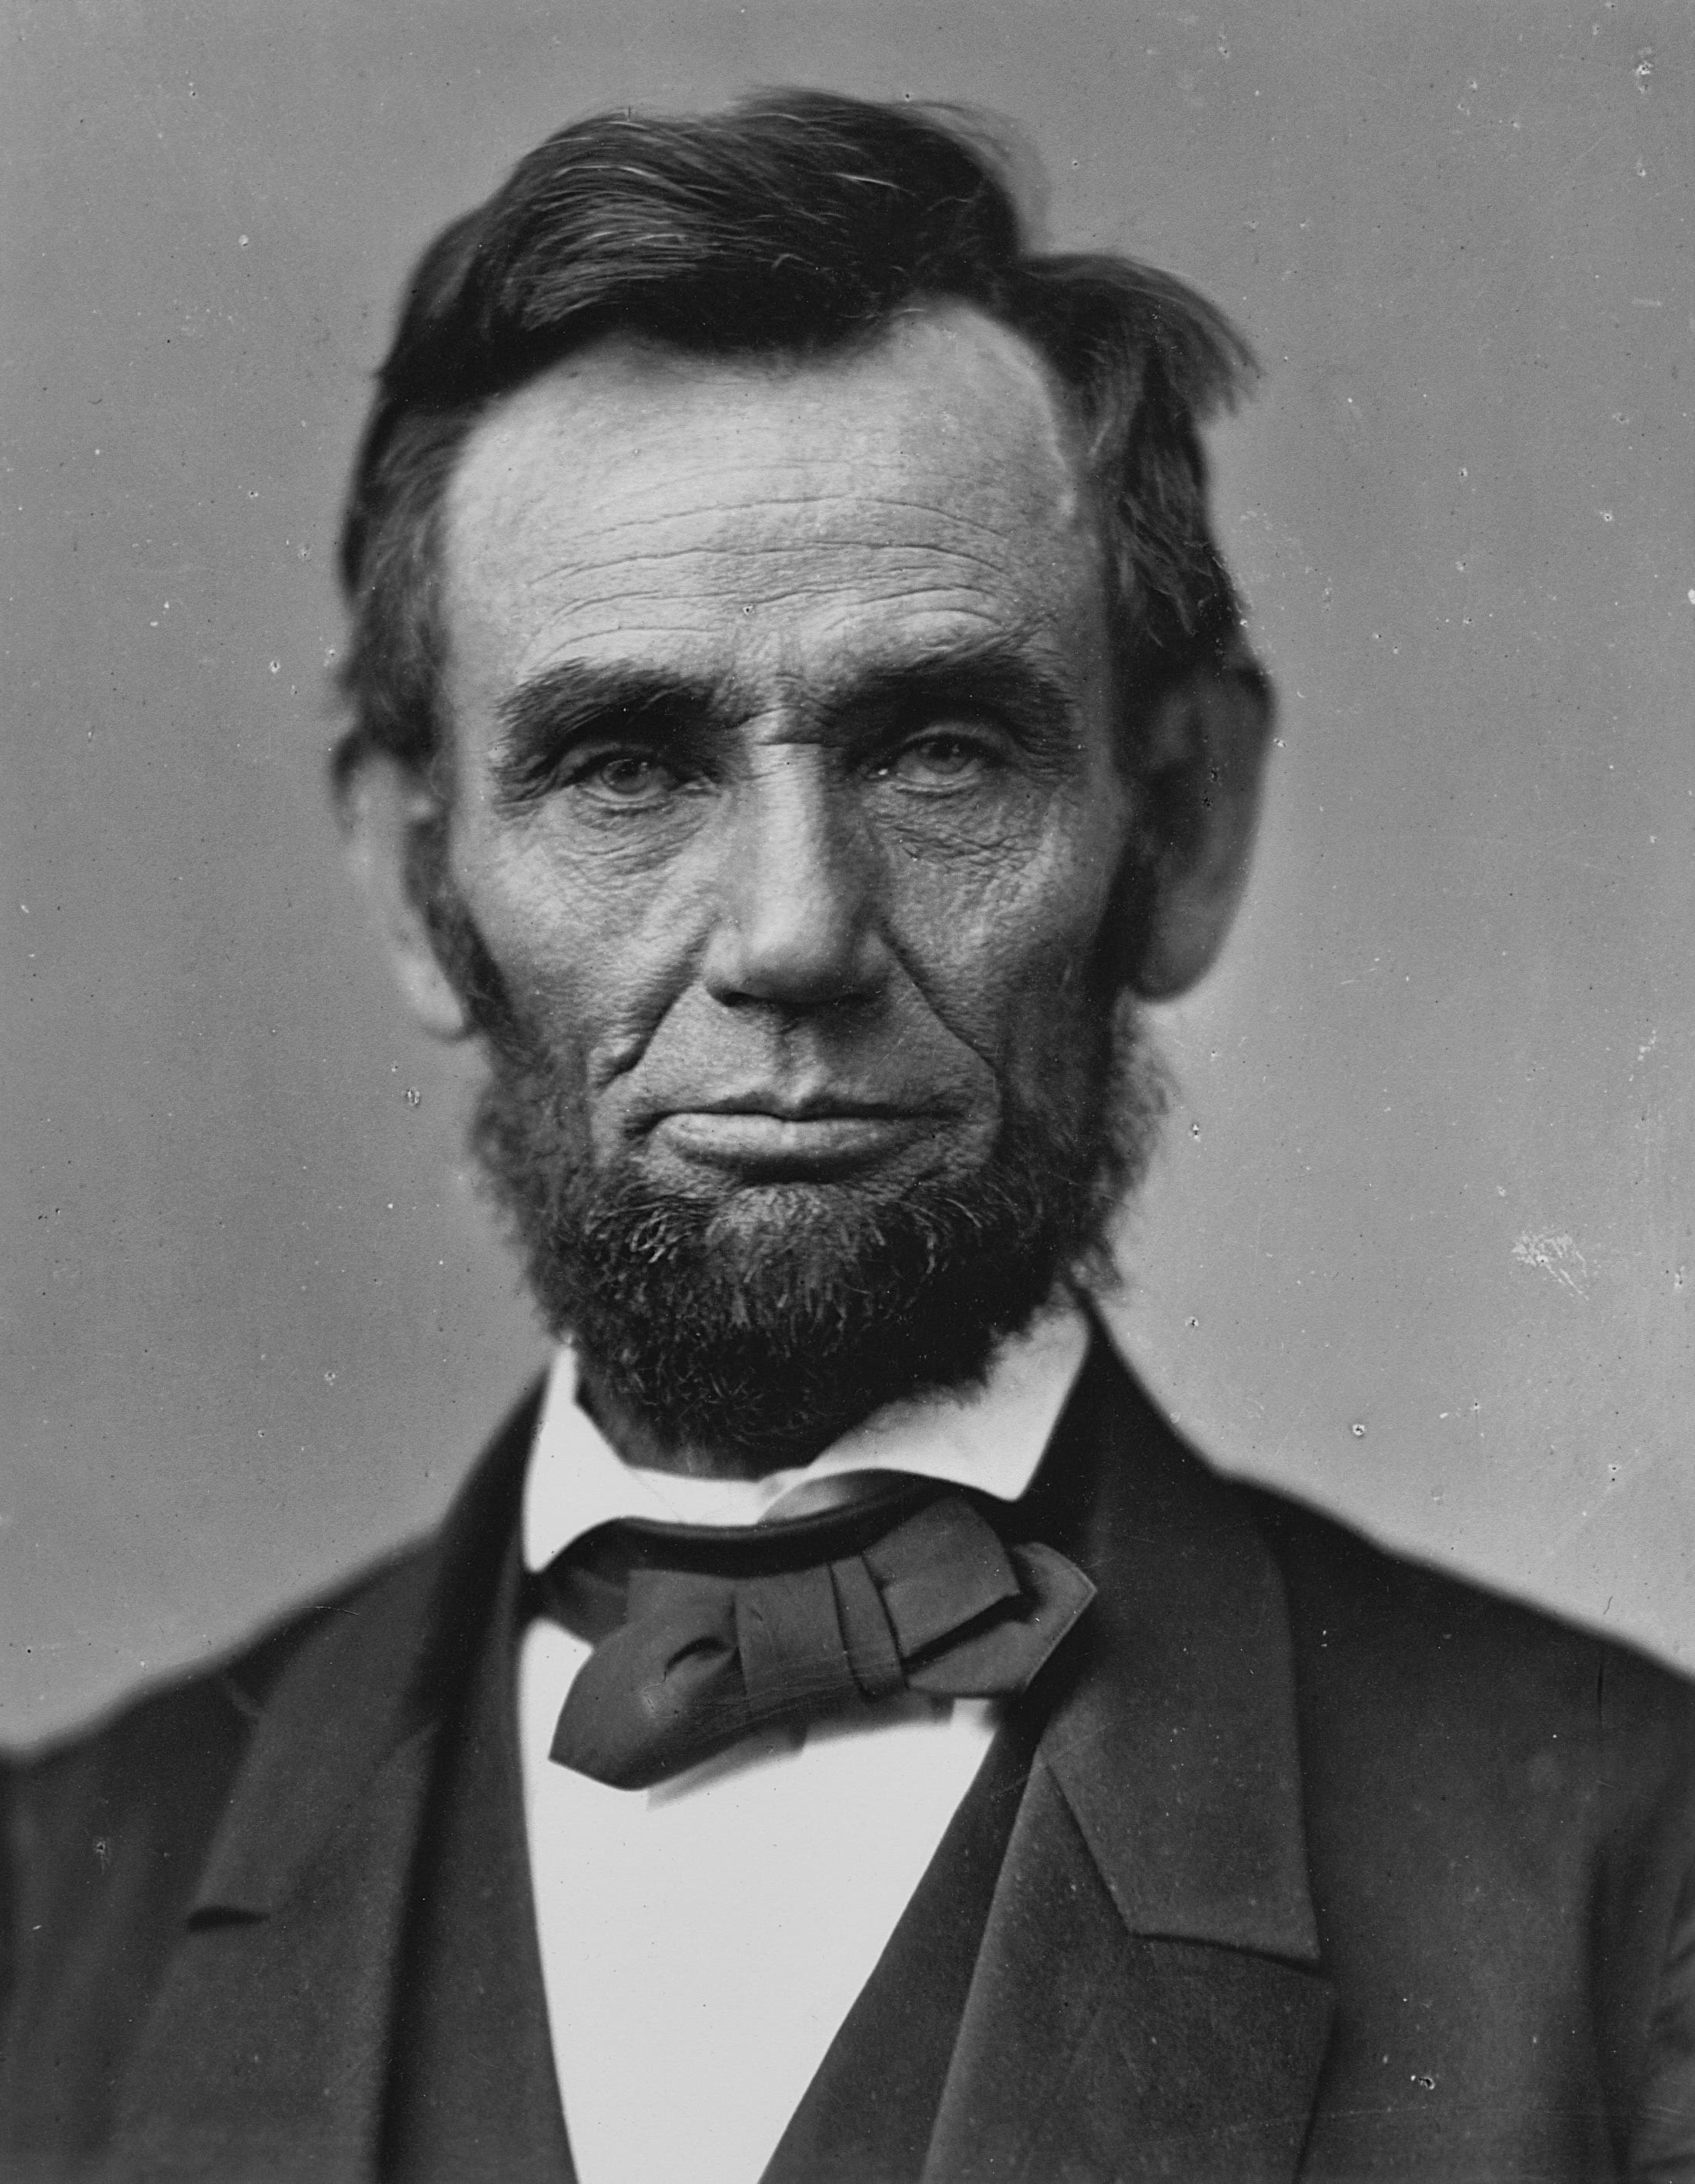 صورة للرئيس الأميركي أبراهام لنكولن